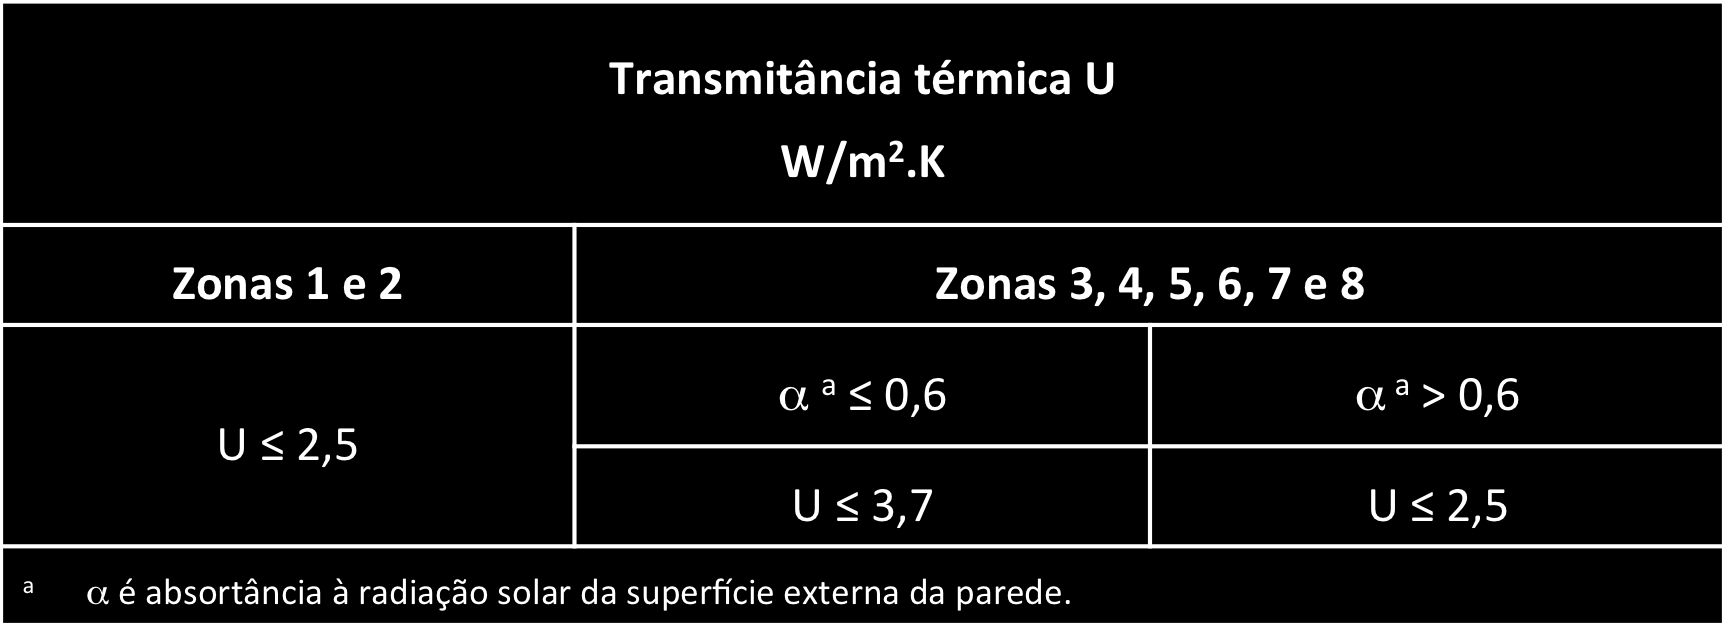 5 Desempenho térmico 9.1.1 - Transmitância térmica de paredes externas CRIT 11.2.